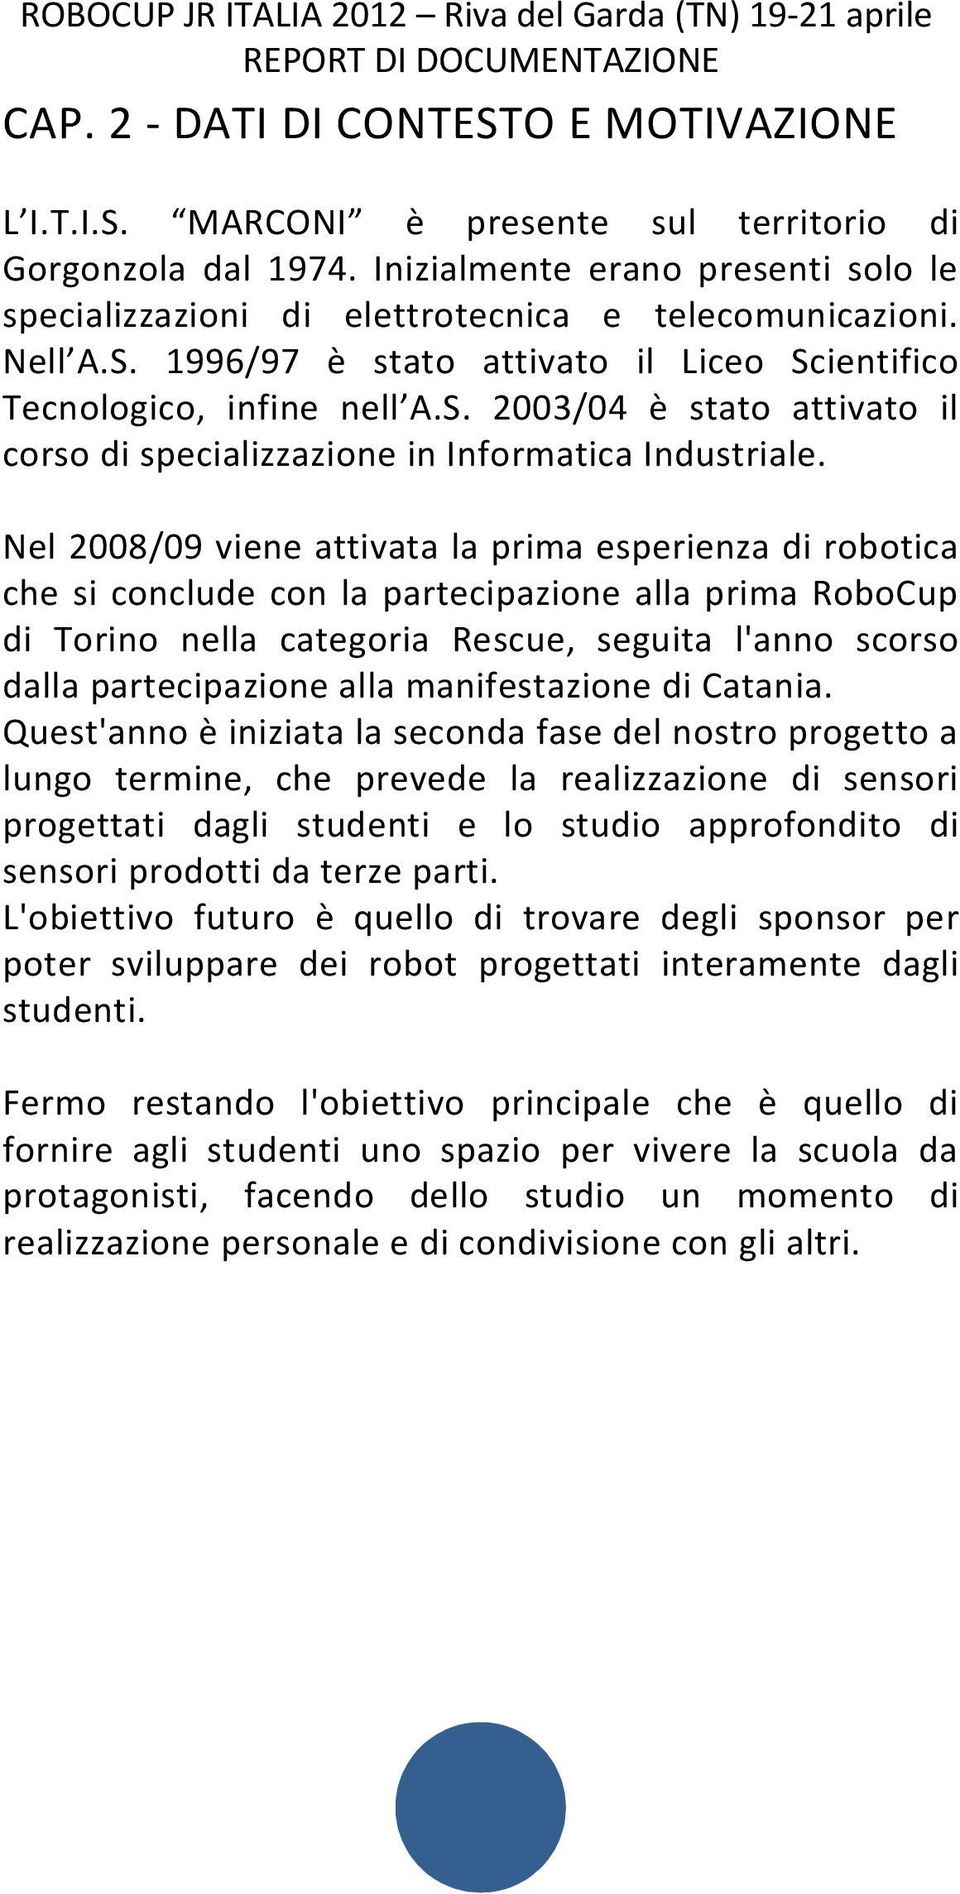 Nel 2008/09 viene attivata la prima esperienza di robotica che si conclude con la partecipazione alla prima RoboCup di Torino nella categoria Rescue, seguita l'anno scorso dalla partecipazione alla